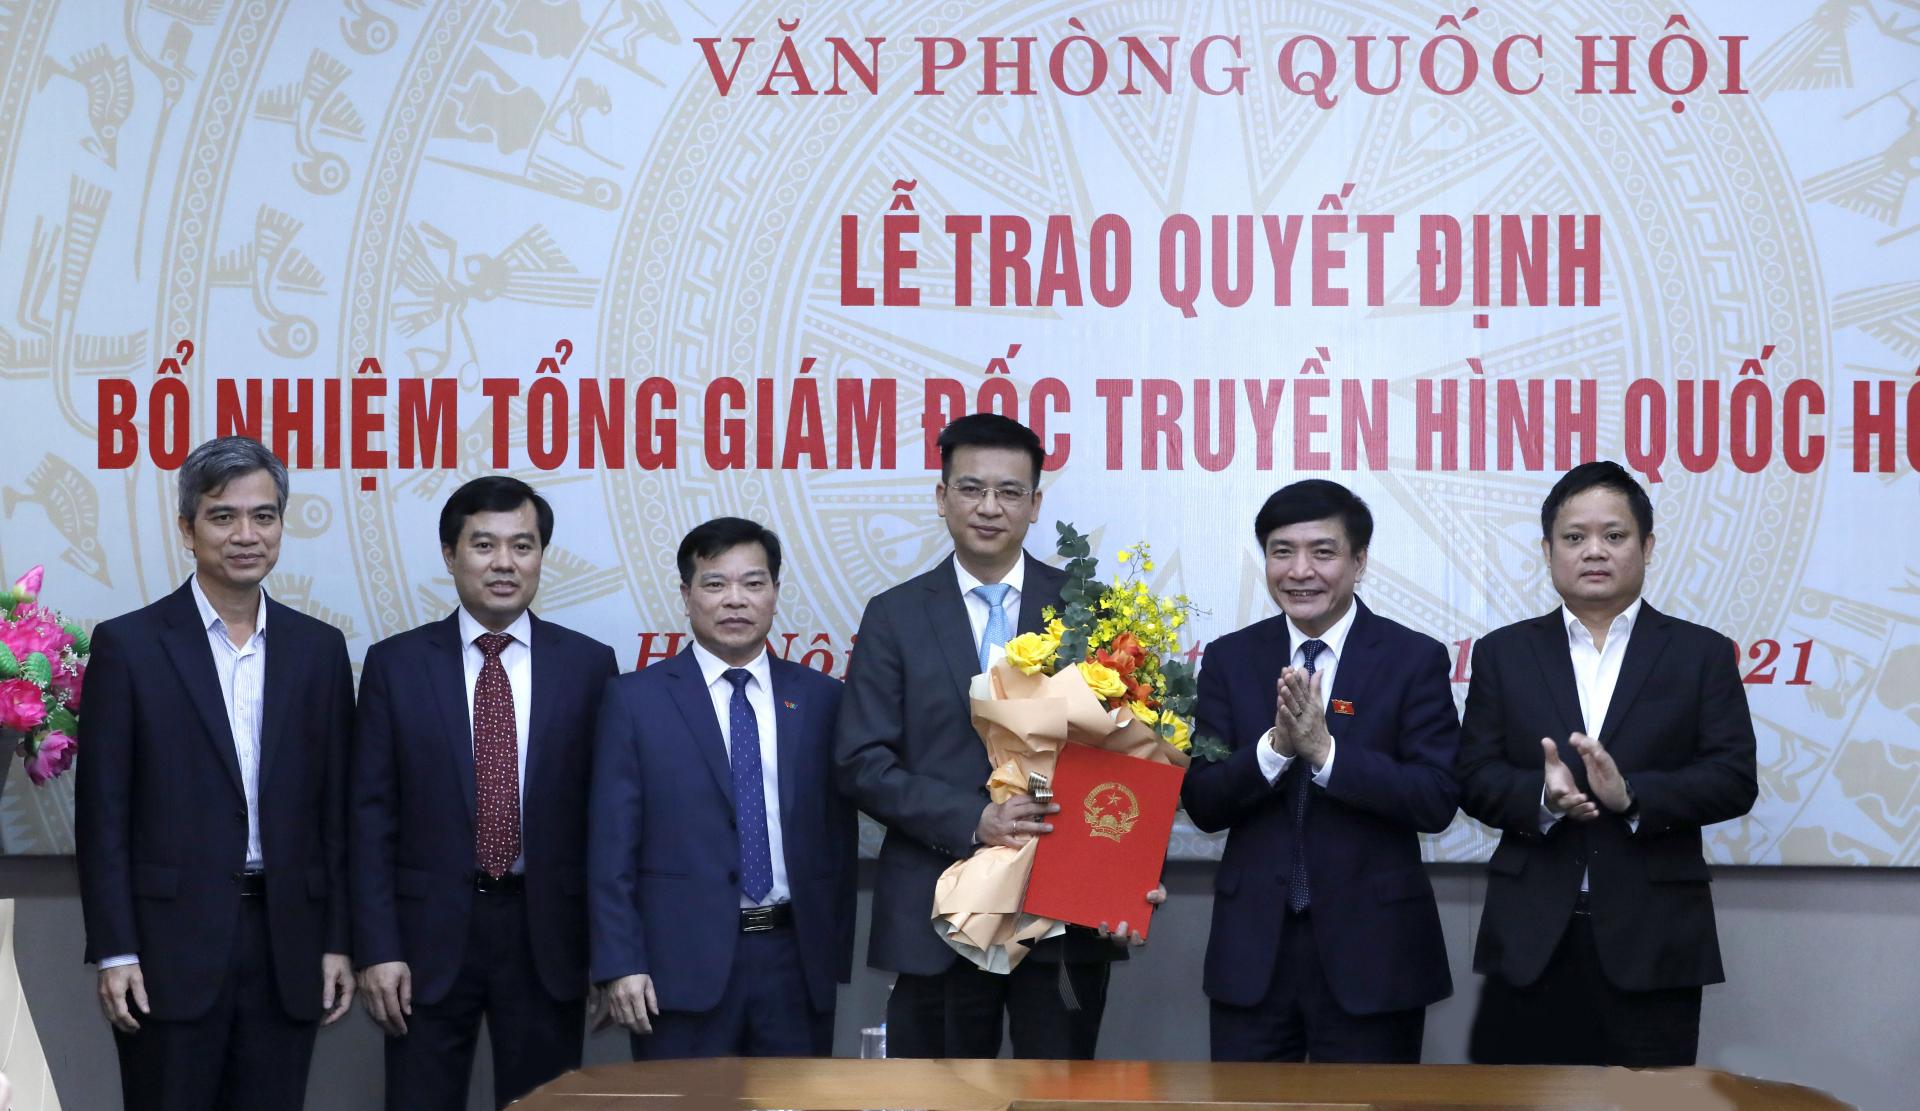 Chủ nhiệm Văn phòng Quốc hội Bùi Văn Cường trao quyết định bổ nhiệm Tổng Giám đốc Truyền hình Quốc hội Lê Quang Minh. 